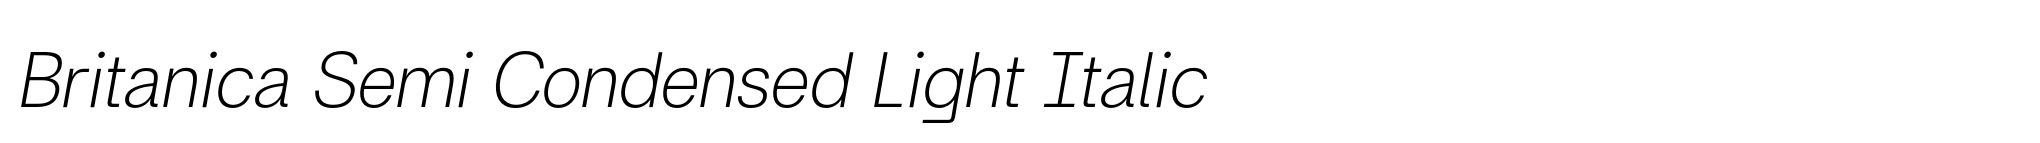 Britanica Semi Condensed Light Italic image